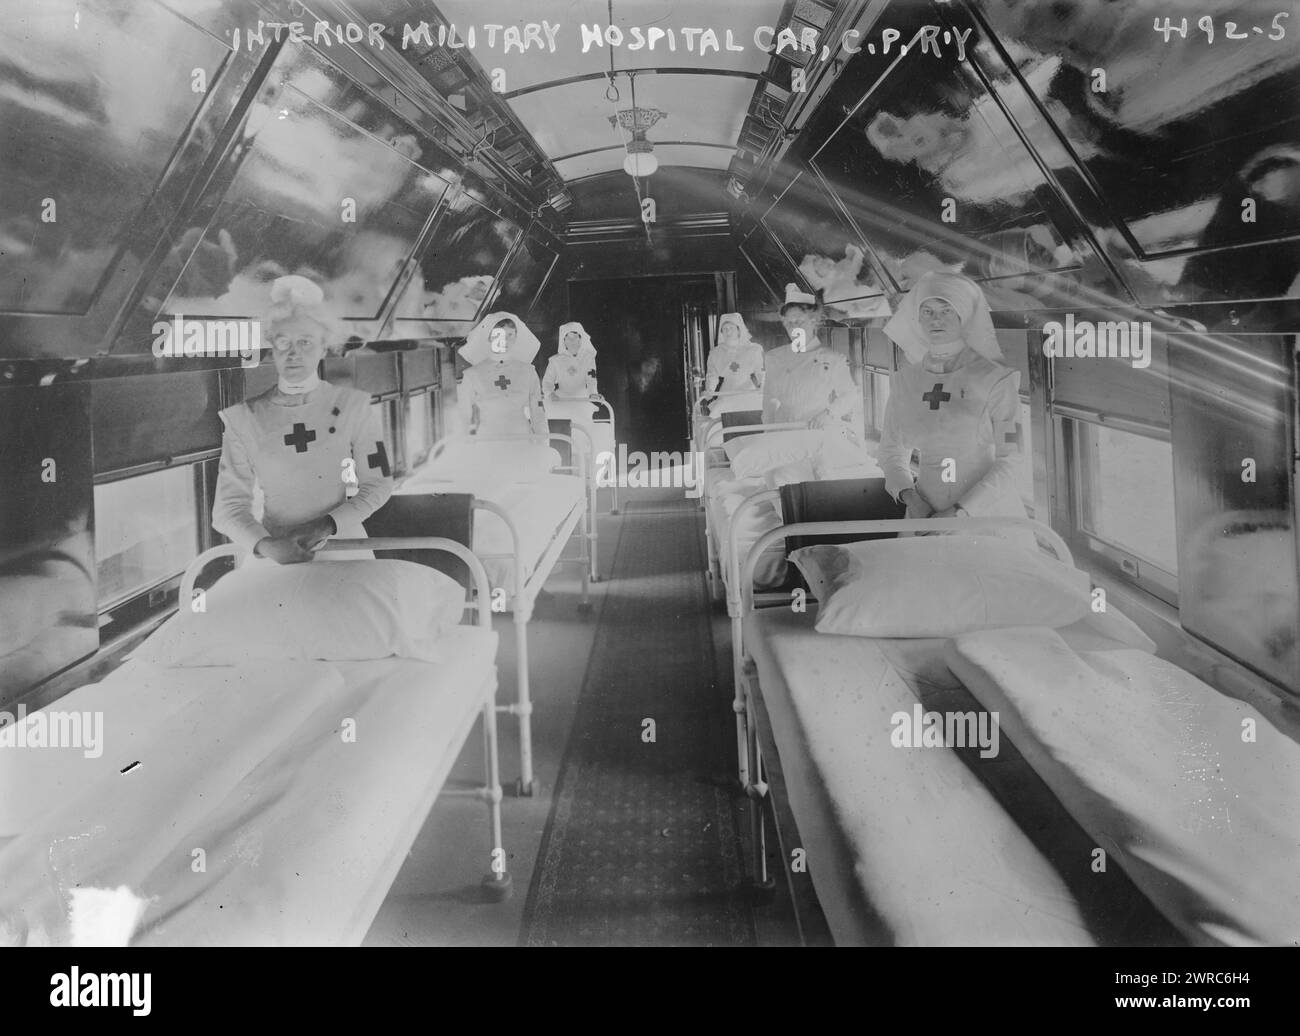 Intérieur de la voiture d'hôpital militaire, C.P.R.'y, photographie montrant l'intérieur d'une voiture d'hôpital militaire avec des infirmières sur le chemin de fer du canadien Pacifique pendant la première Guerre mondiale, 1917, la Guerre mondiale, 1914-1918, négatifs en verre, 1 négatif : verre Banque D'Images